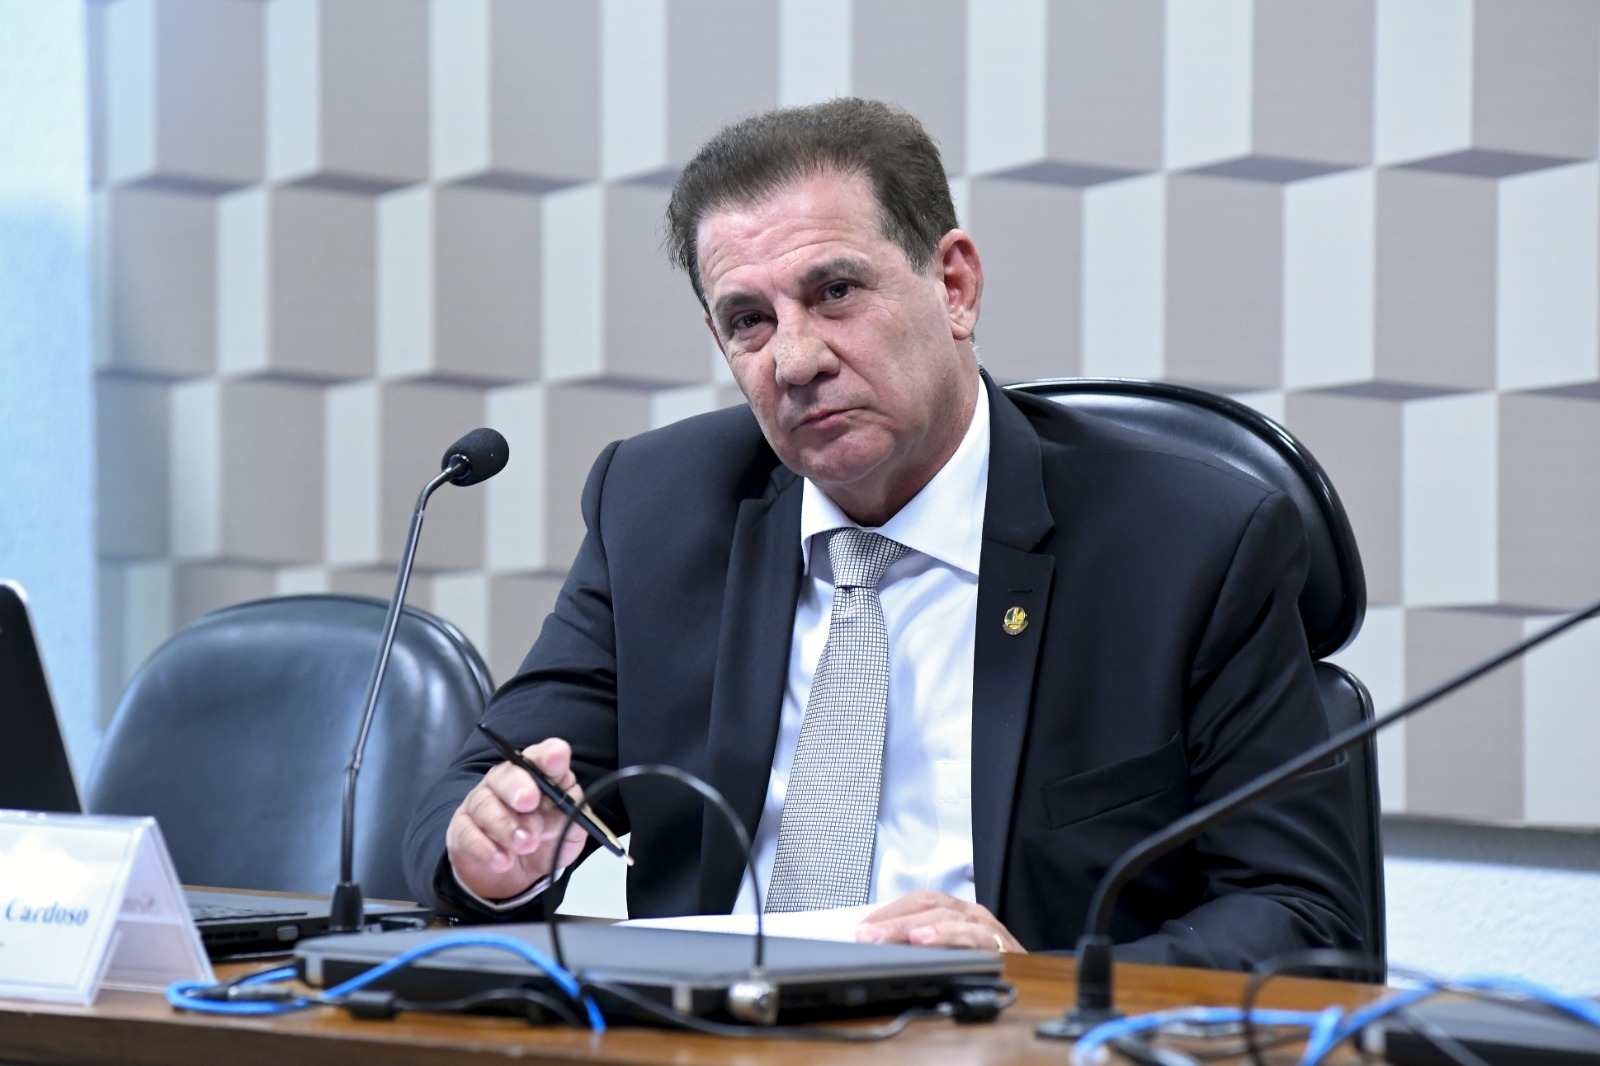 Senador Vanderlan Cardoso lançou pré-candidatura a prefeito, mas racha no PSD continua em evidência